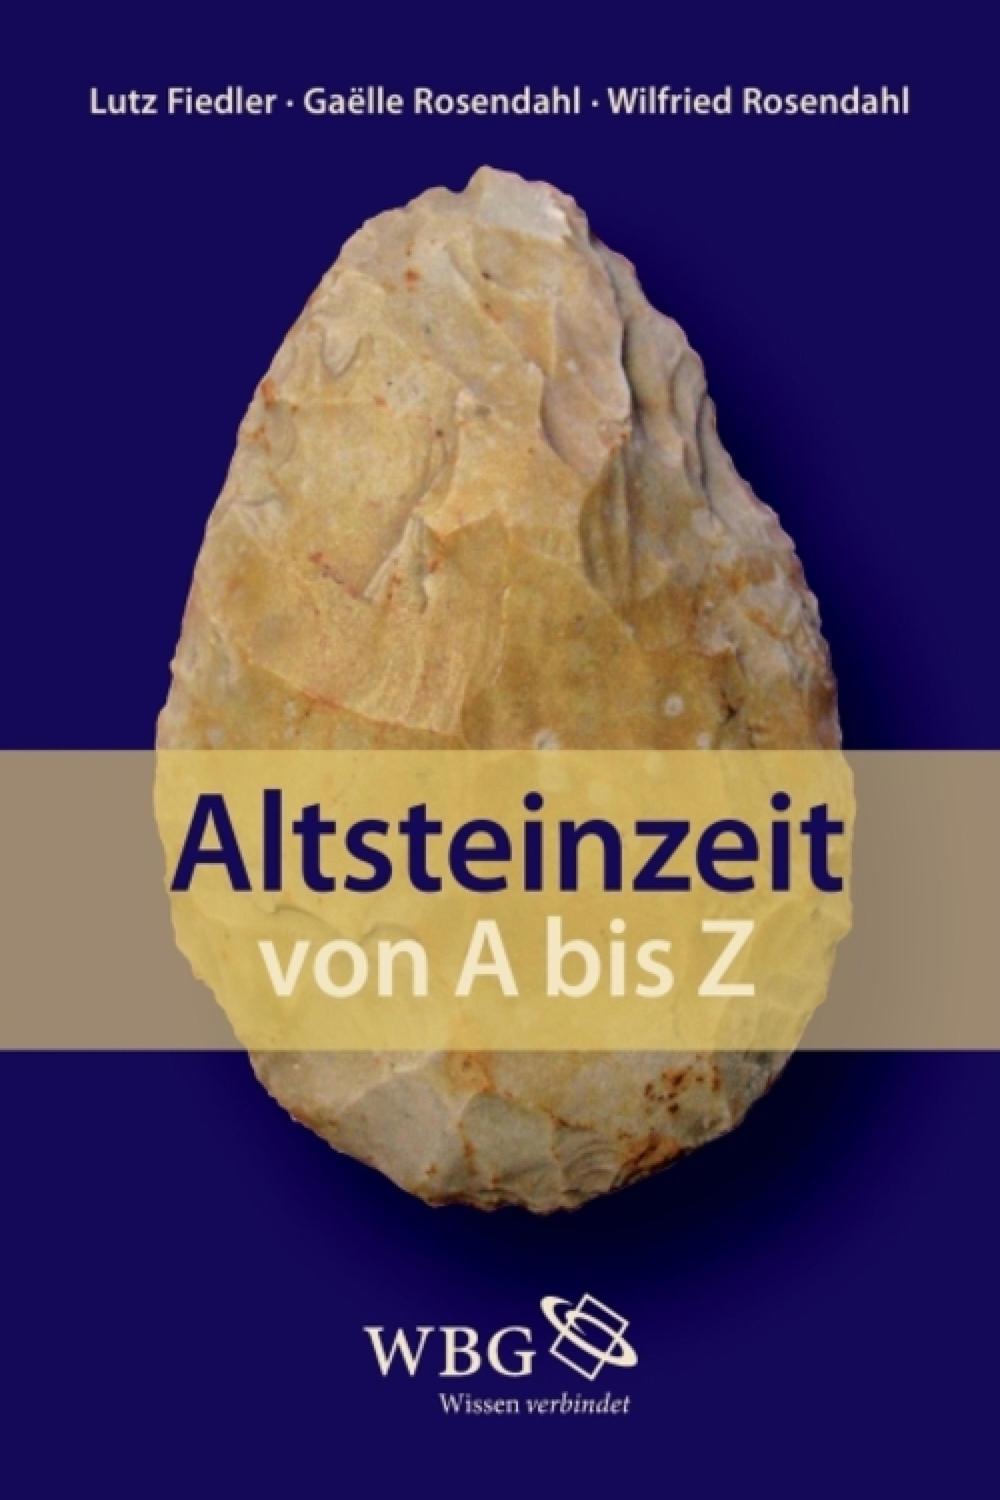 Altsteinzeit von A bis Z - Gaëlle Rosendahl, Lutz Fiedler, Wilfried Rosendahl